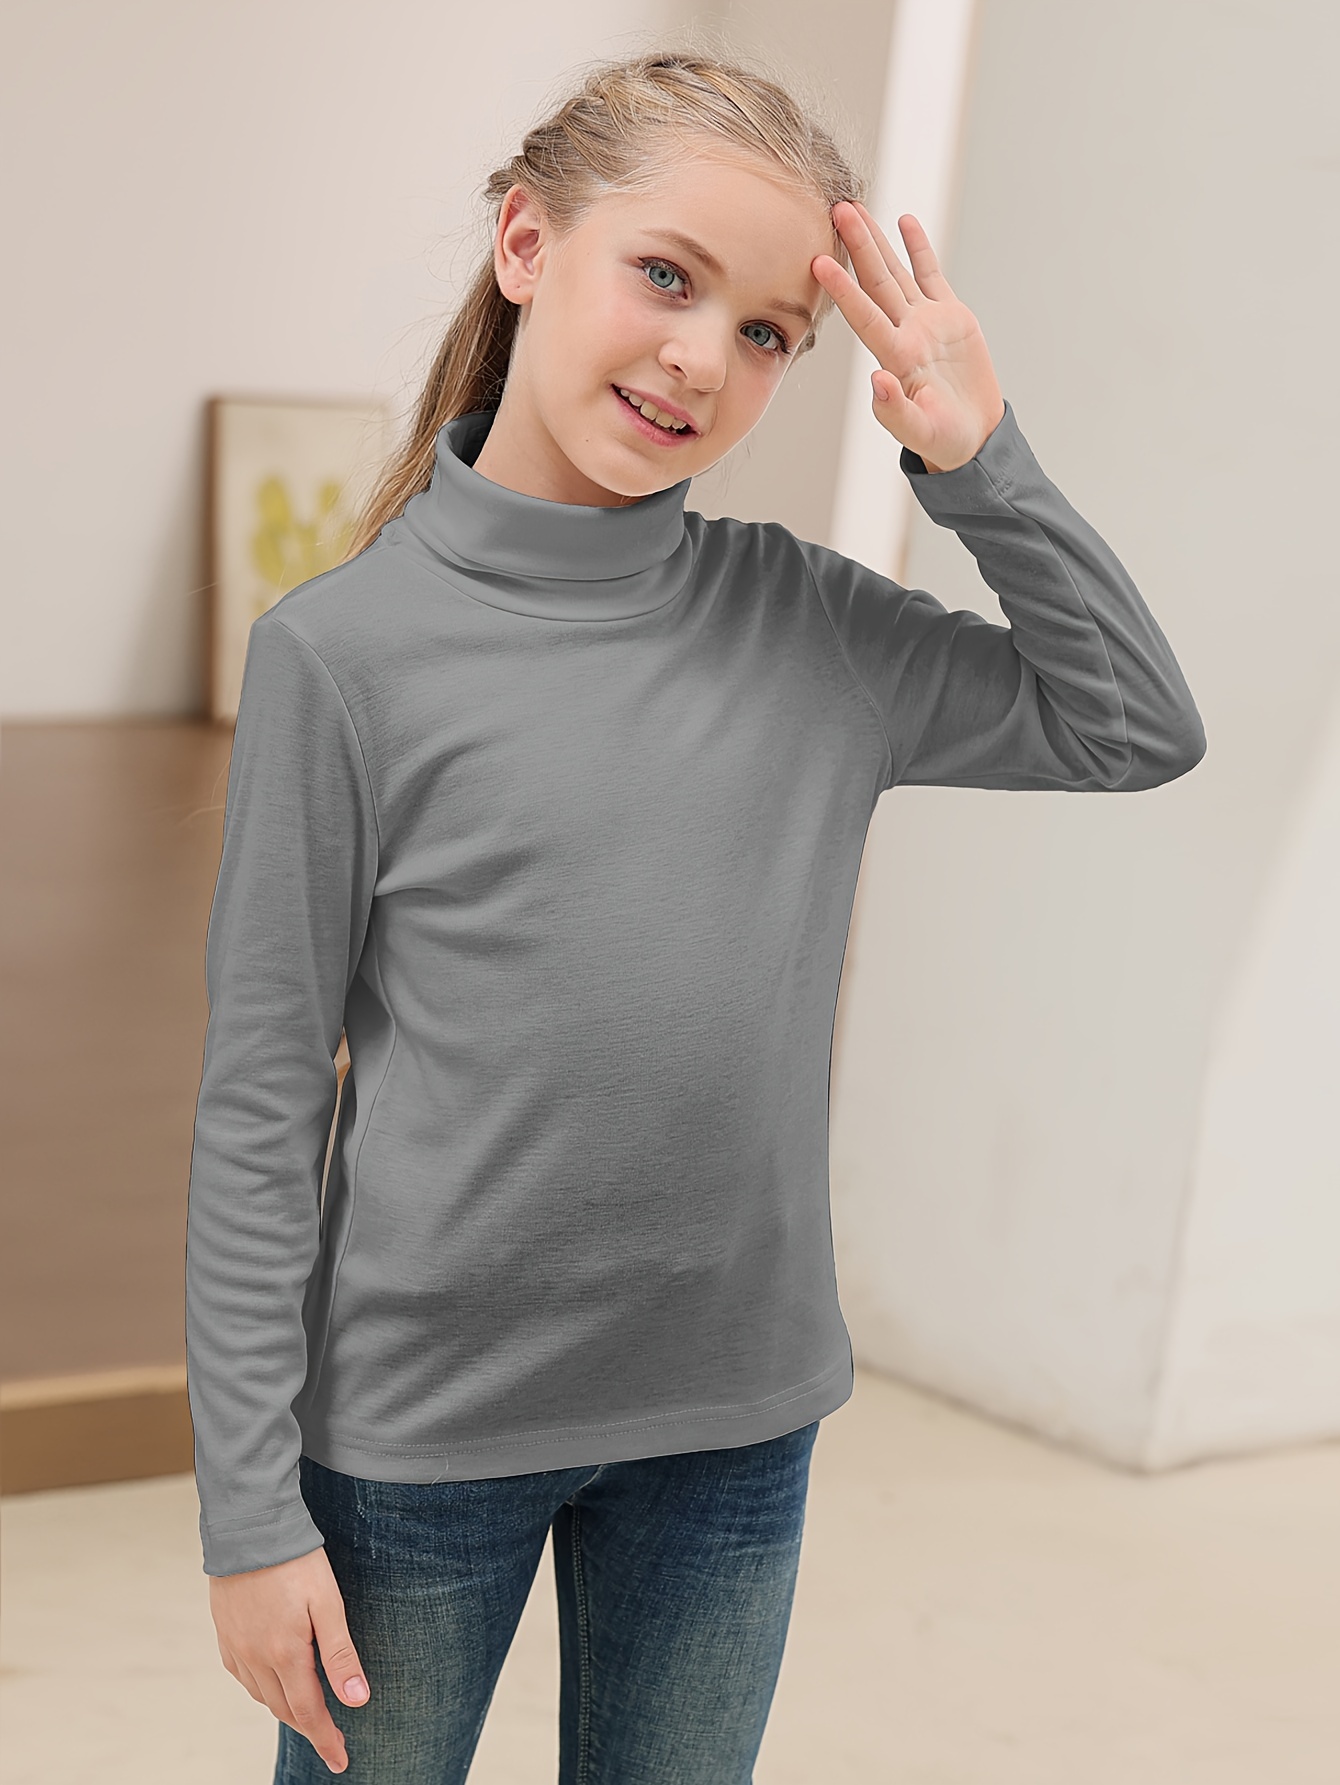 Camisetas cuello alto niñas - Camisetas y polos para chicas - vertbaudet